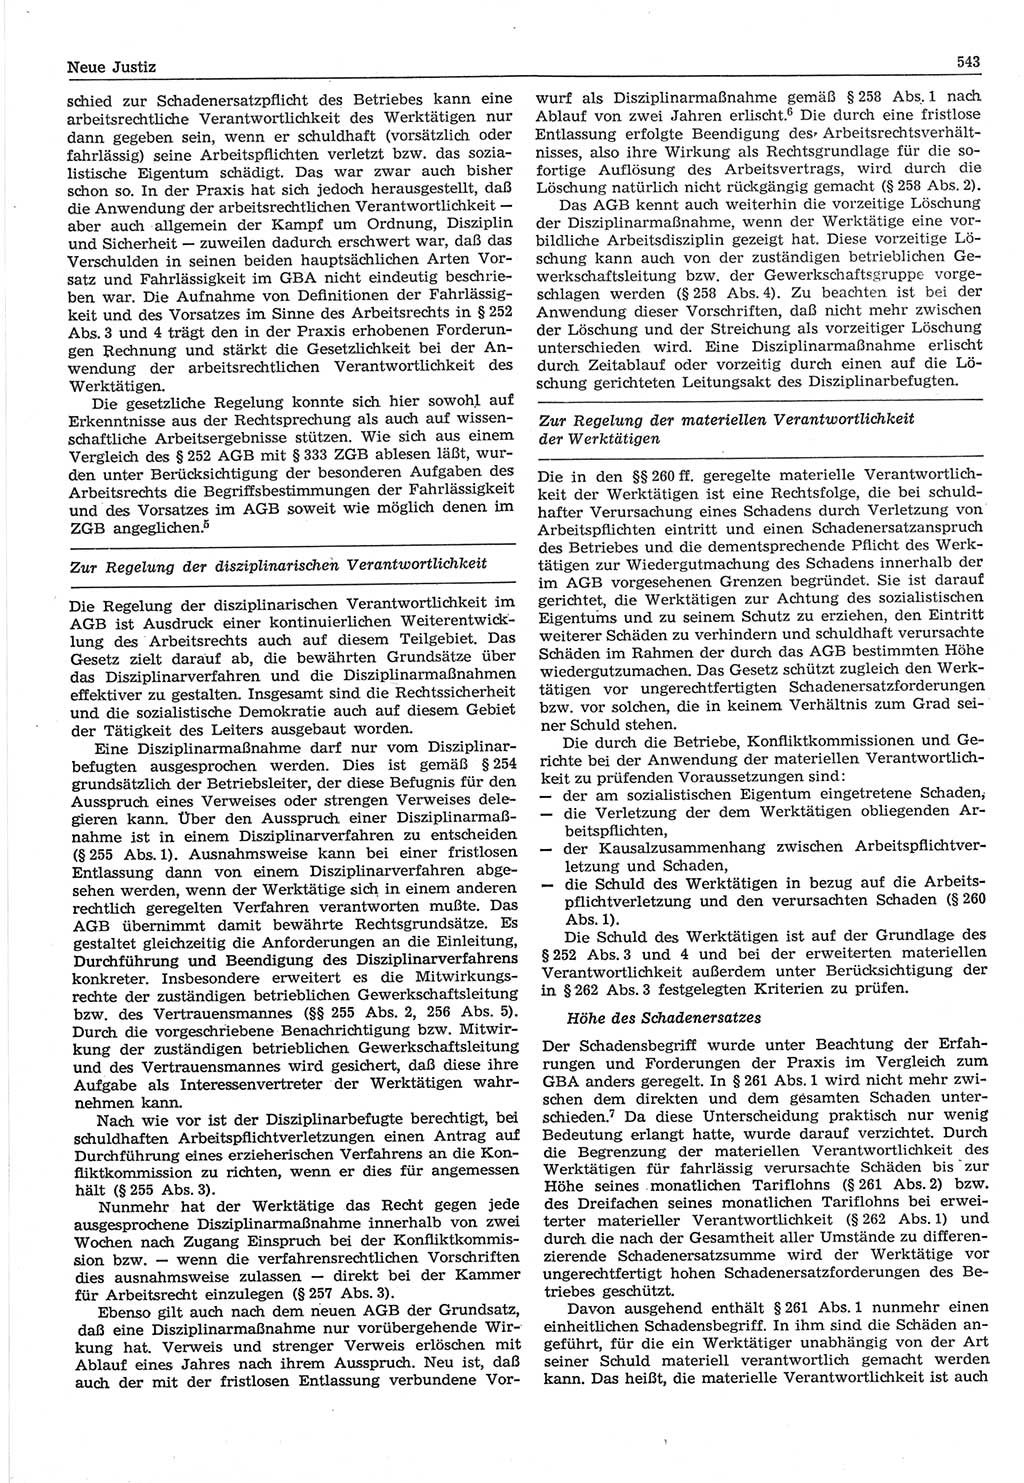 Neue Justiz (NJ), Zeitschrift für Recht und Rechtswissenschaft-Zeitschrift, sozialistisches Recht und Gesetzlichkeit, 31. Jahrgang 1977, Seite 543 (NJ DDR 1977, S. 543)